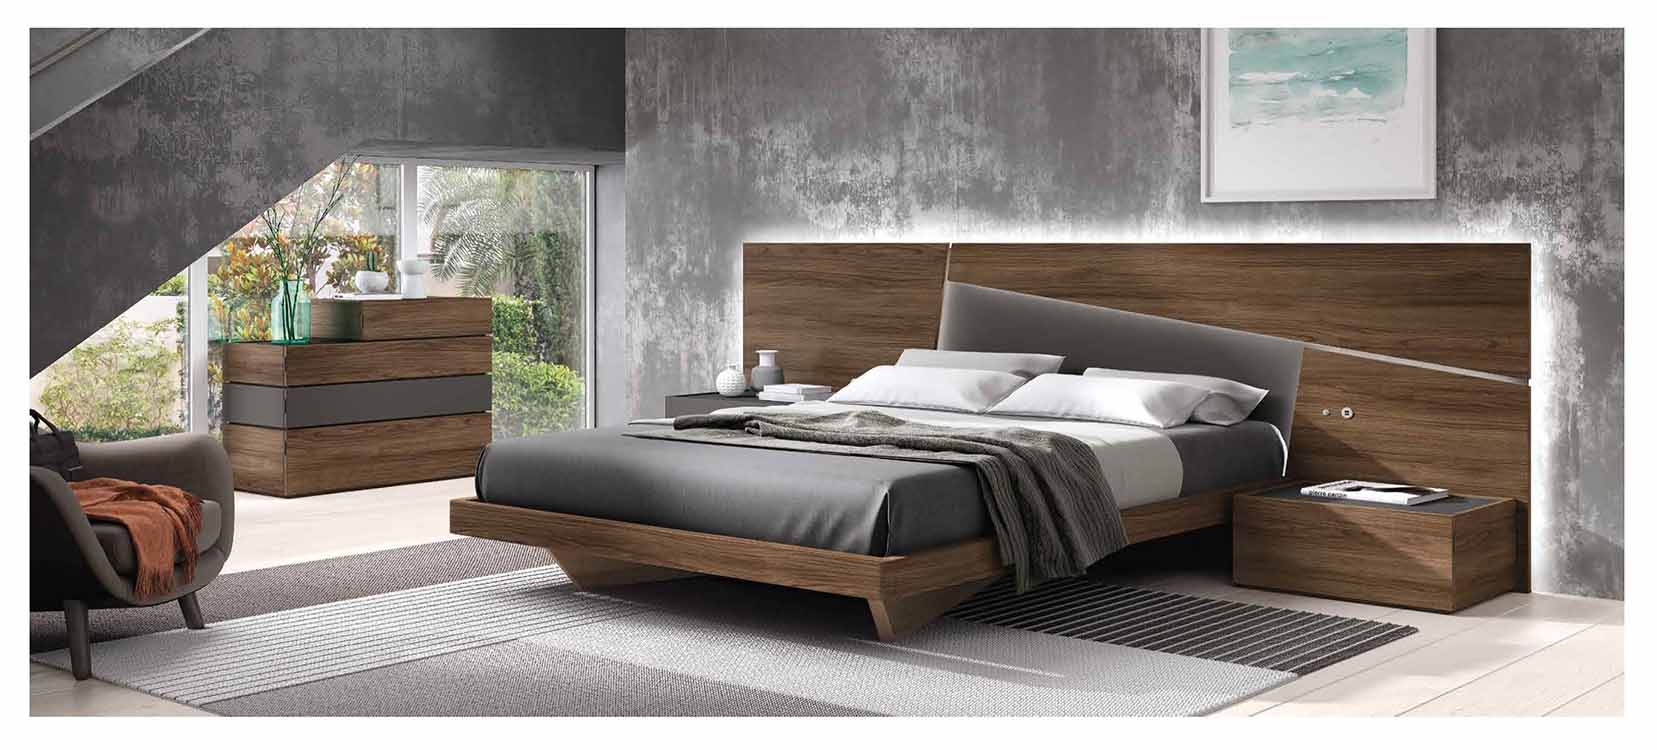 http://www.munozmuebles.net/nueva/catalogo/dormitorios1-2253-aro.jpg - Fotos con 
muebles de madera de castaño